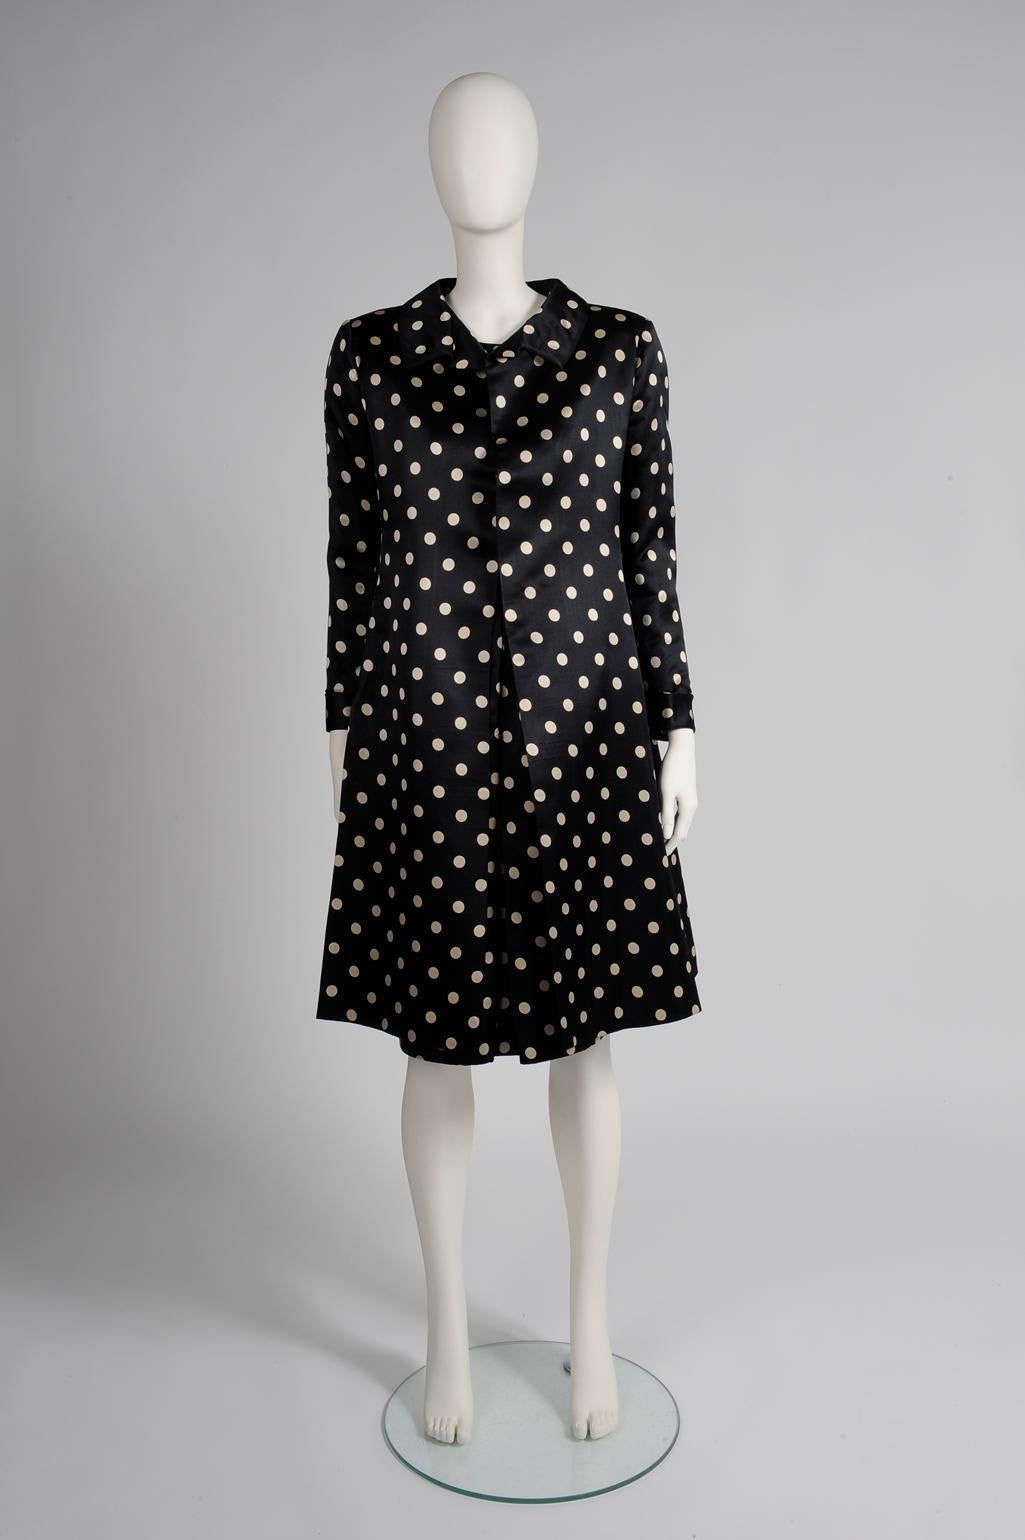 La saison des mariages approche et cet ensemble haute couture de Nina Ricci du début des années 60 est une option élégante pour la cérémonie. Fabriqué à partir d'une soie satinée raffinée imprimée avec des pois blancs cassés contrastés sur un fond